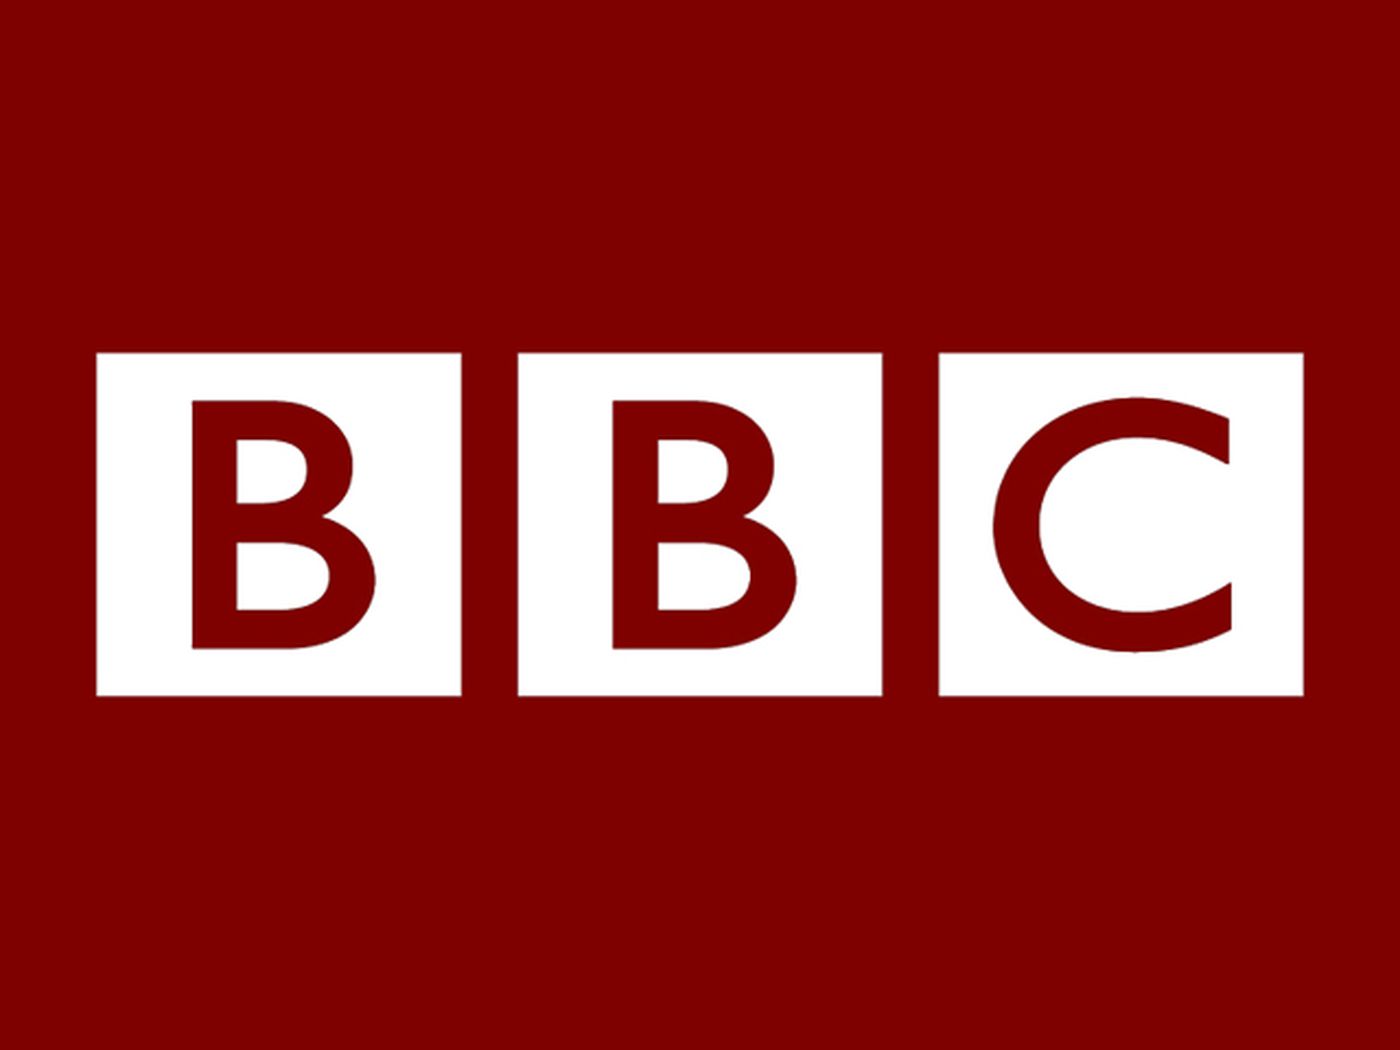 De BBC heeft OpenAI verboden om gegevens van haar websites te verzamelen, maar heeft toegezegd zich in te zetten voor AI-journalistiek